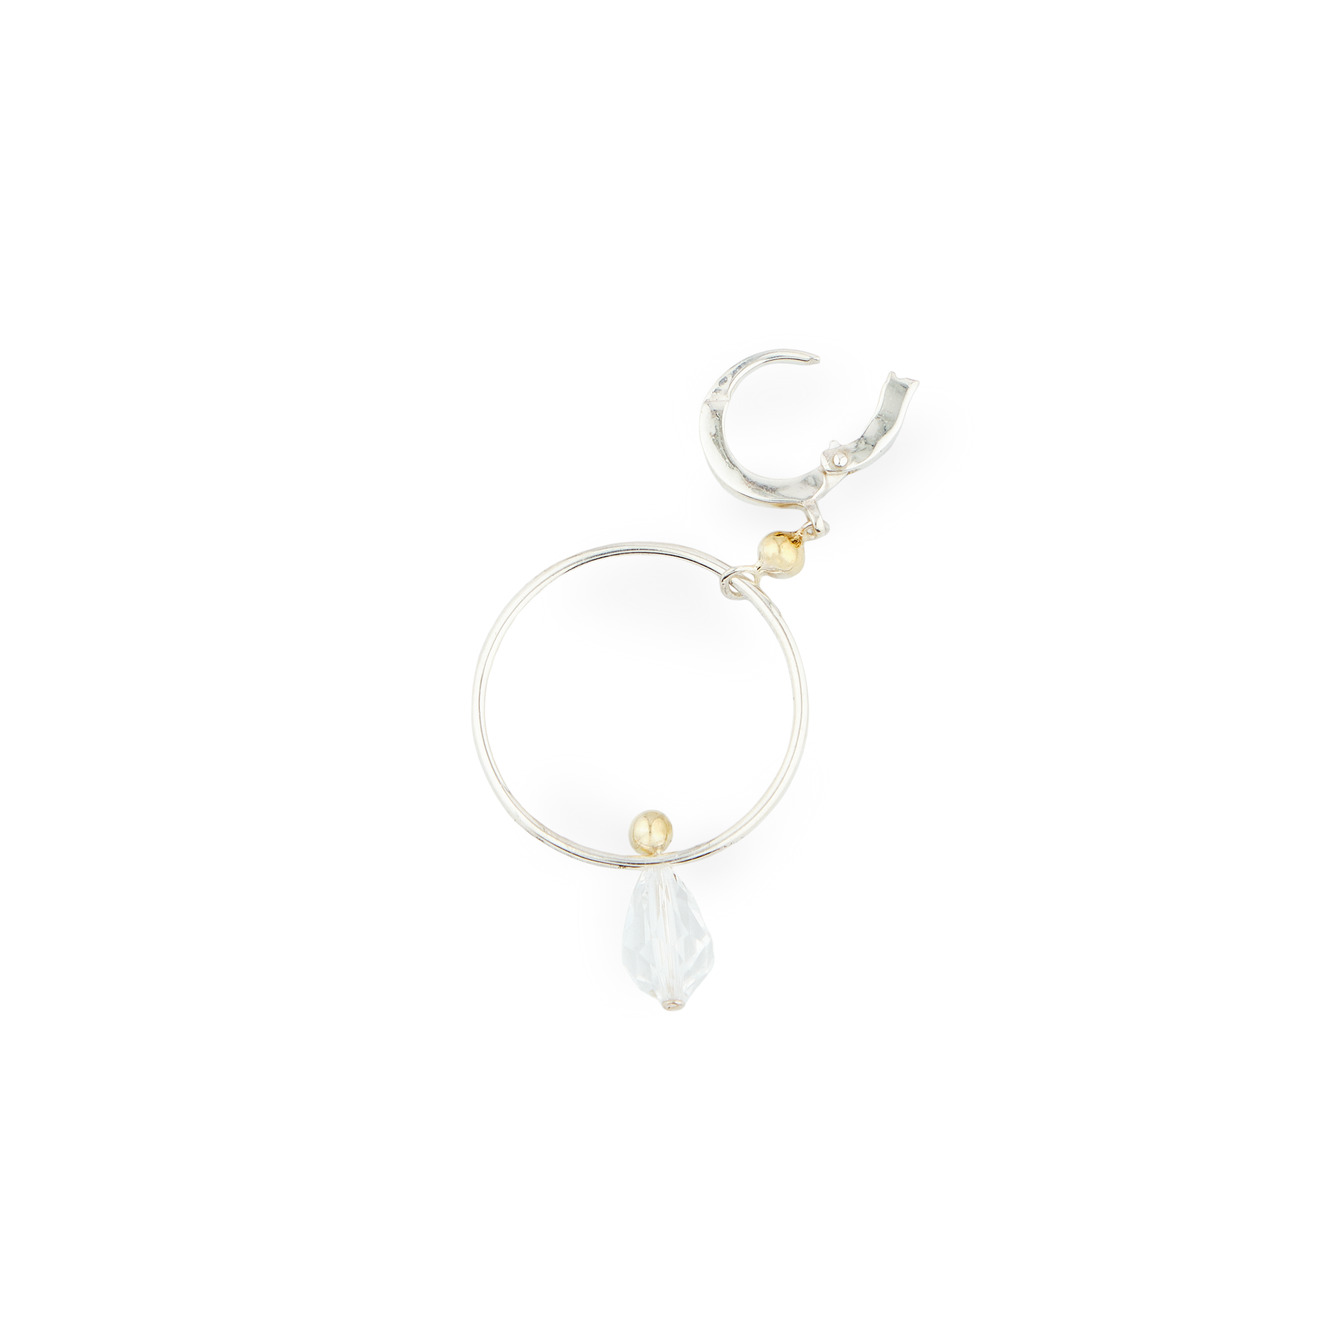 УРА jewelry Моносерьга из серебра с кристаллами сваровски opus jewelry моносерьга из серебра net cross earring с хризолитом